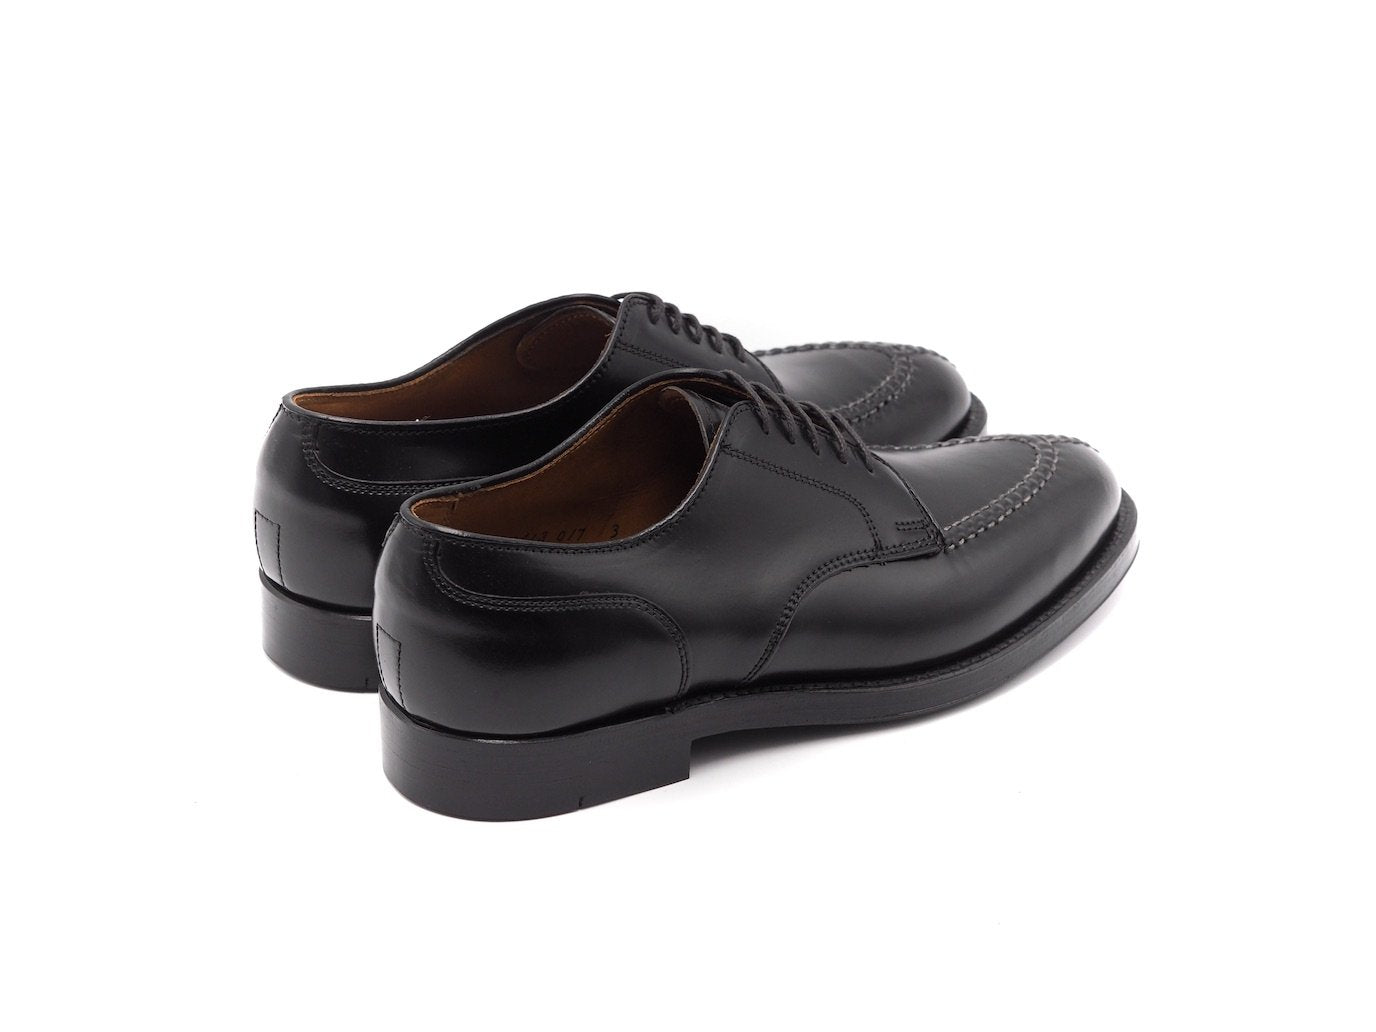 Von Maur, Shoes, Nwb Brighton Von Maur Made In Italy Navy Looks Black